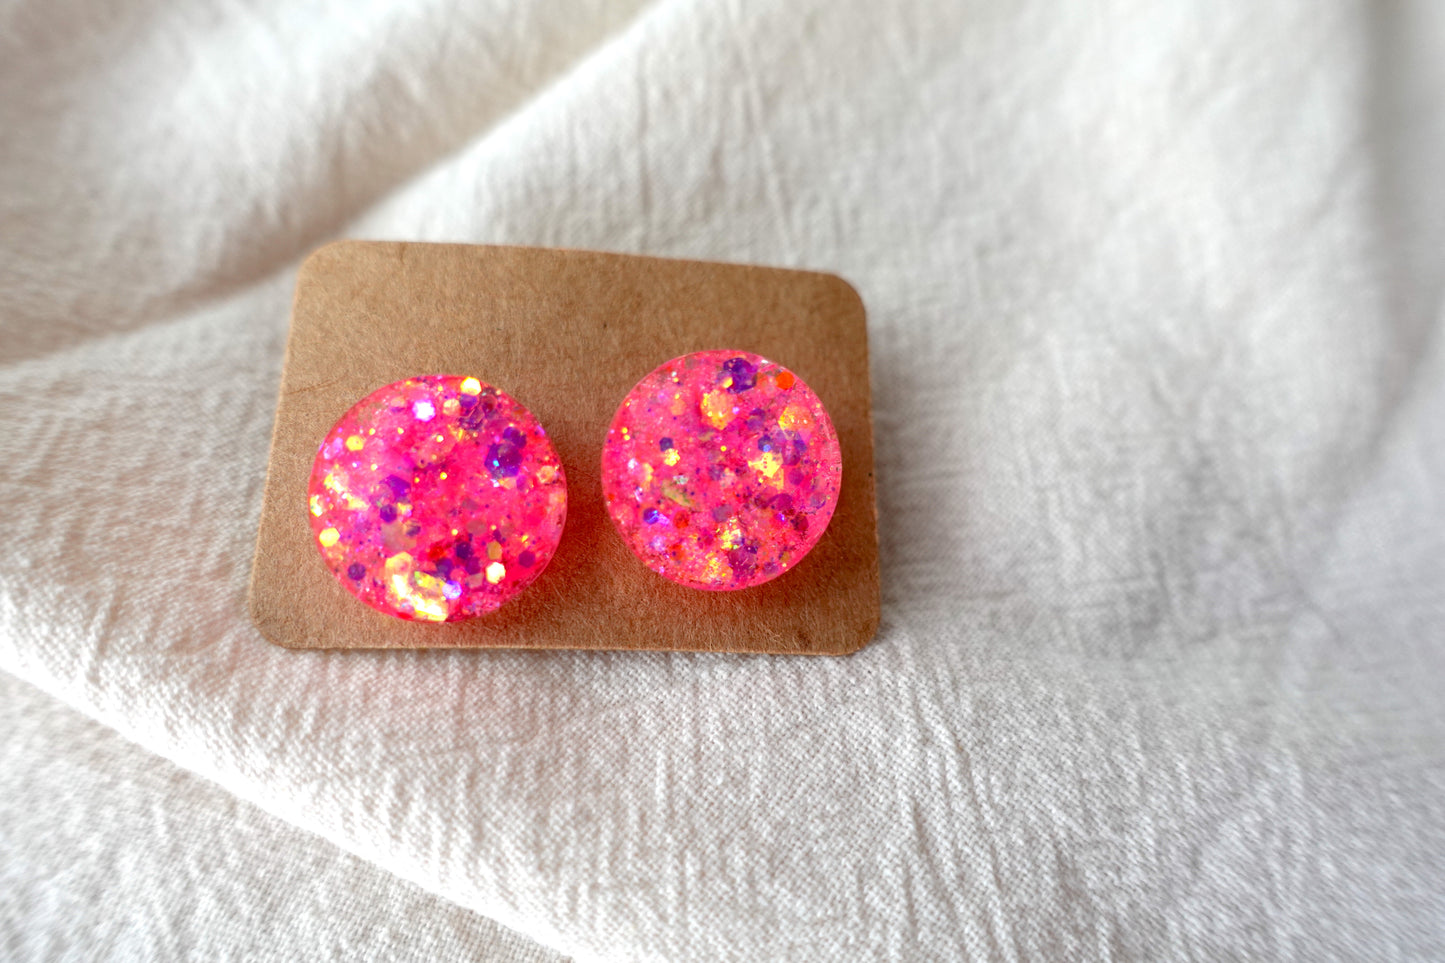 Roze holografische mini oorstekertjes met goudkleurige holografische flakes oorbellen